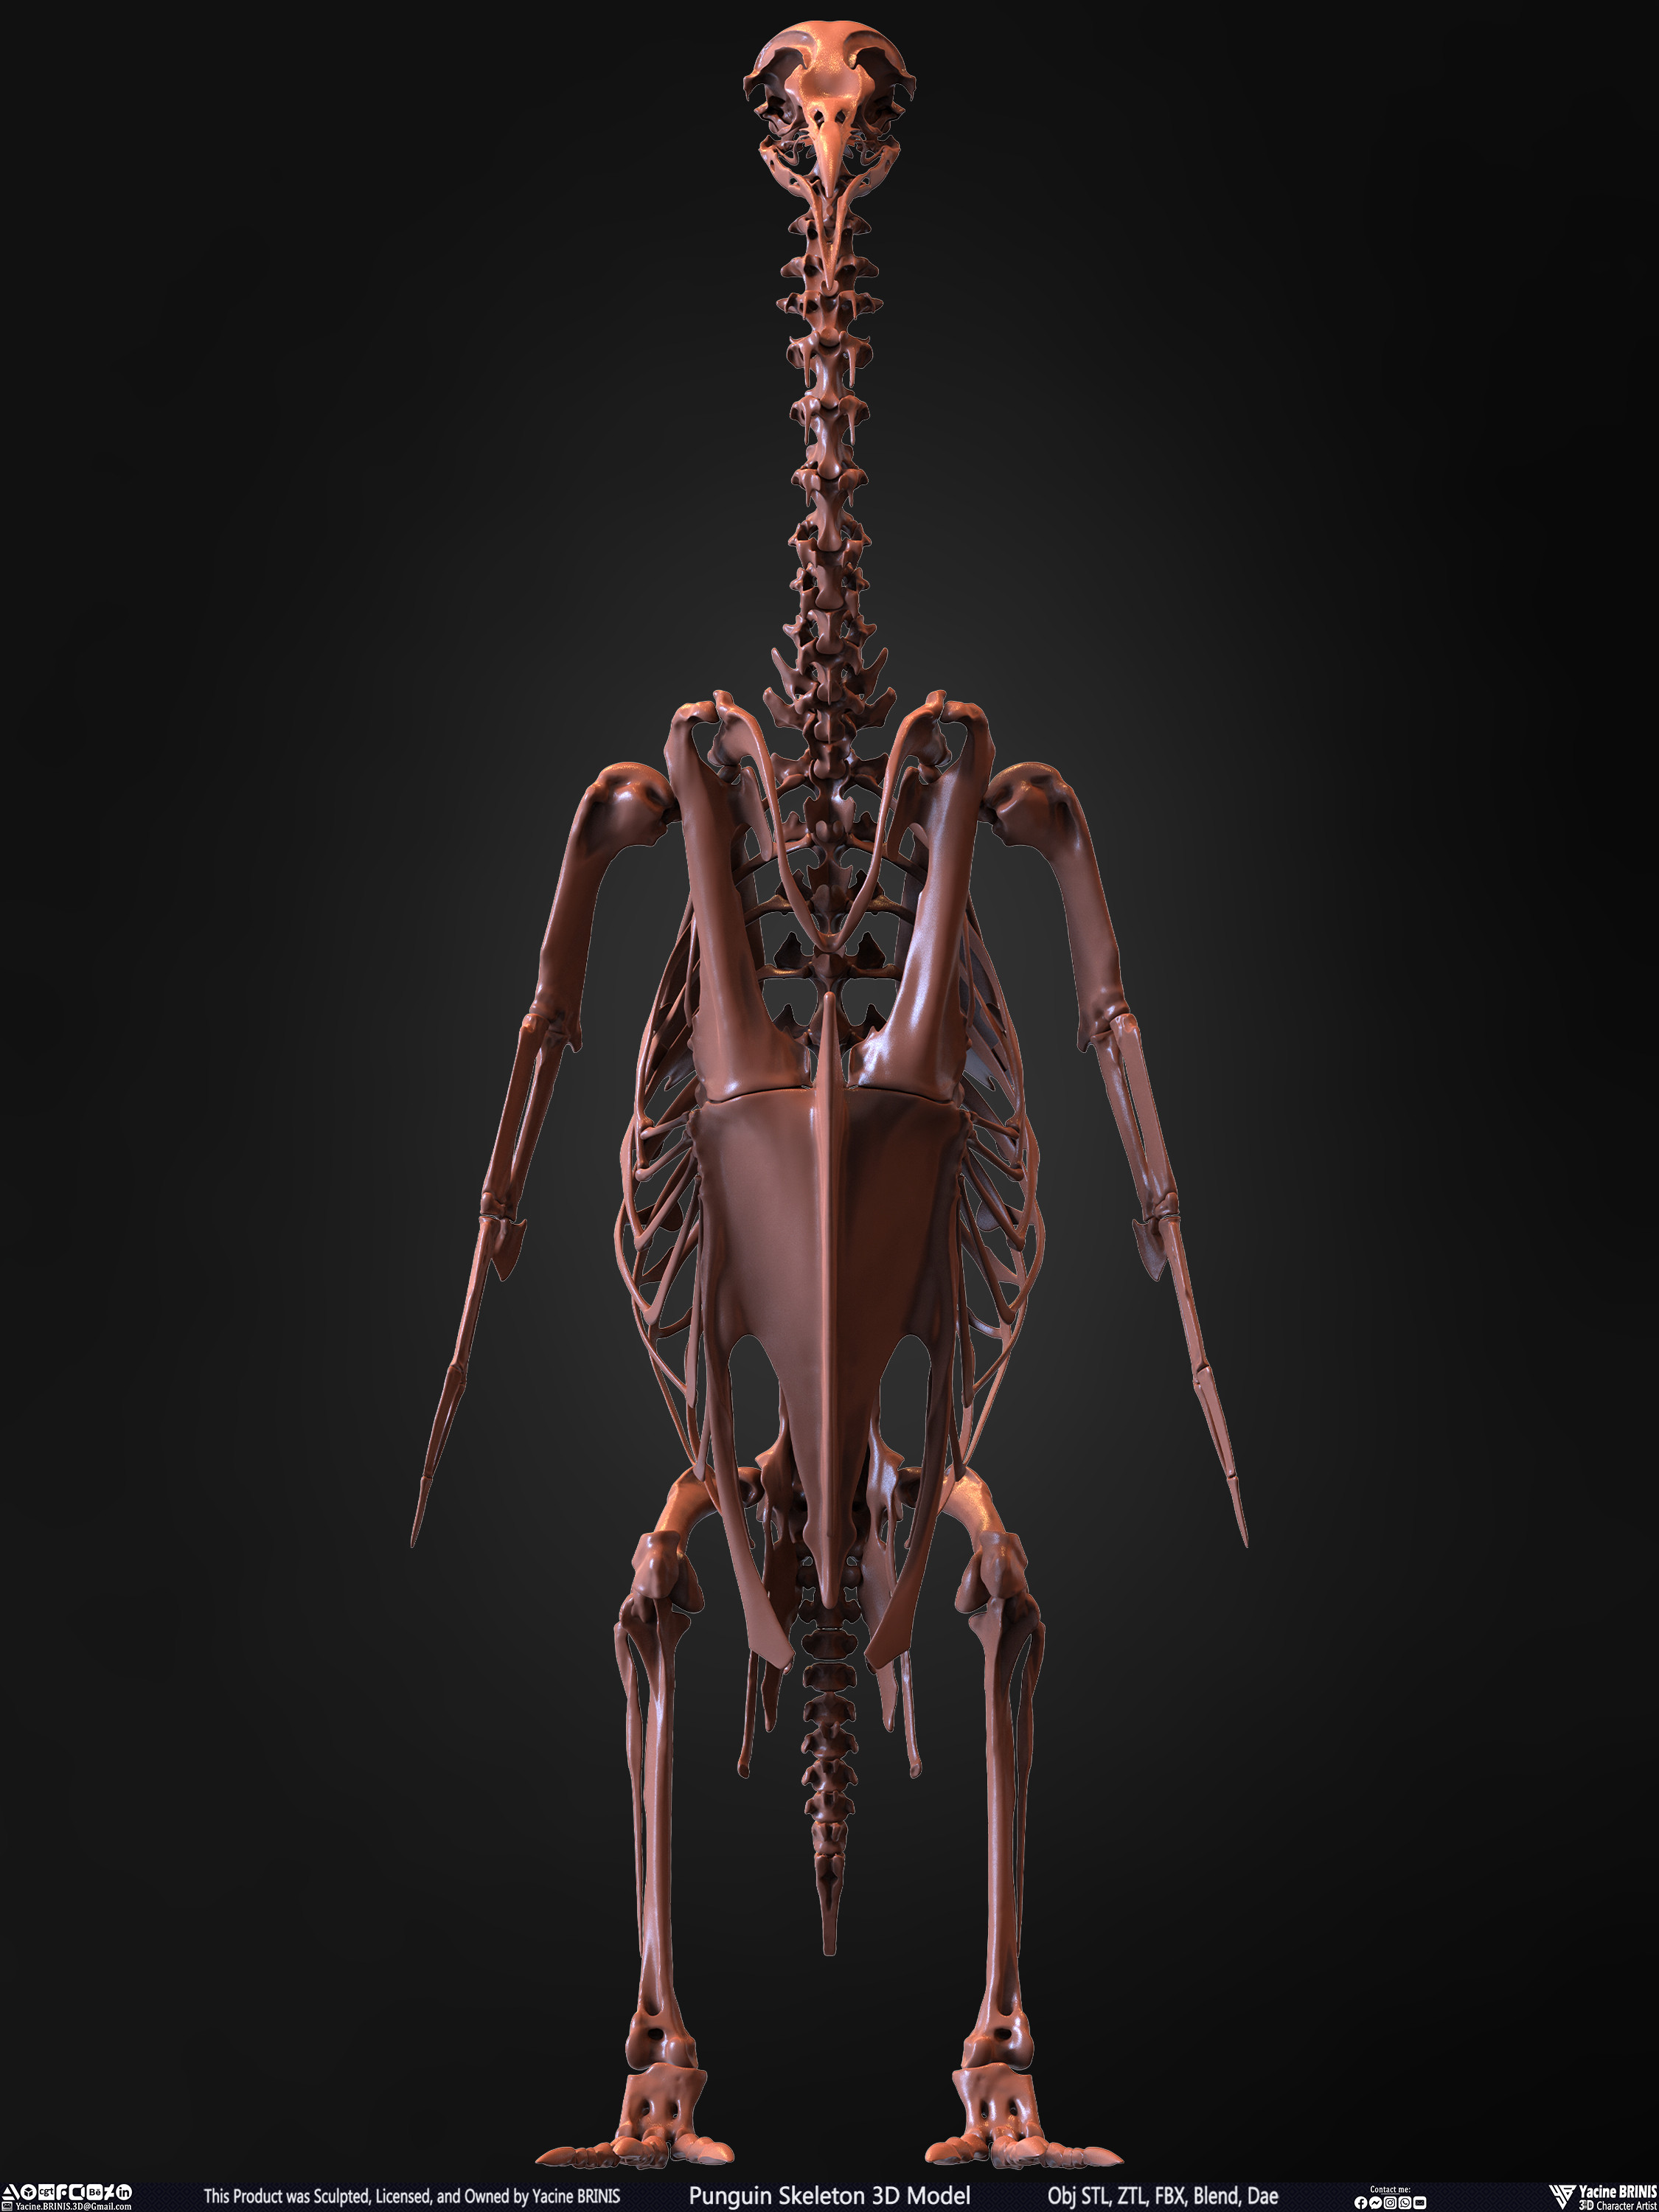 Penguin Skeleton 3D Model Sculpted by Yacine BRINIS Set 004